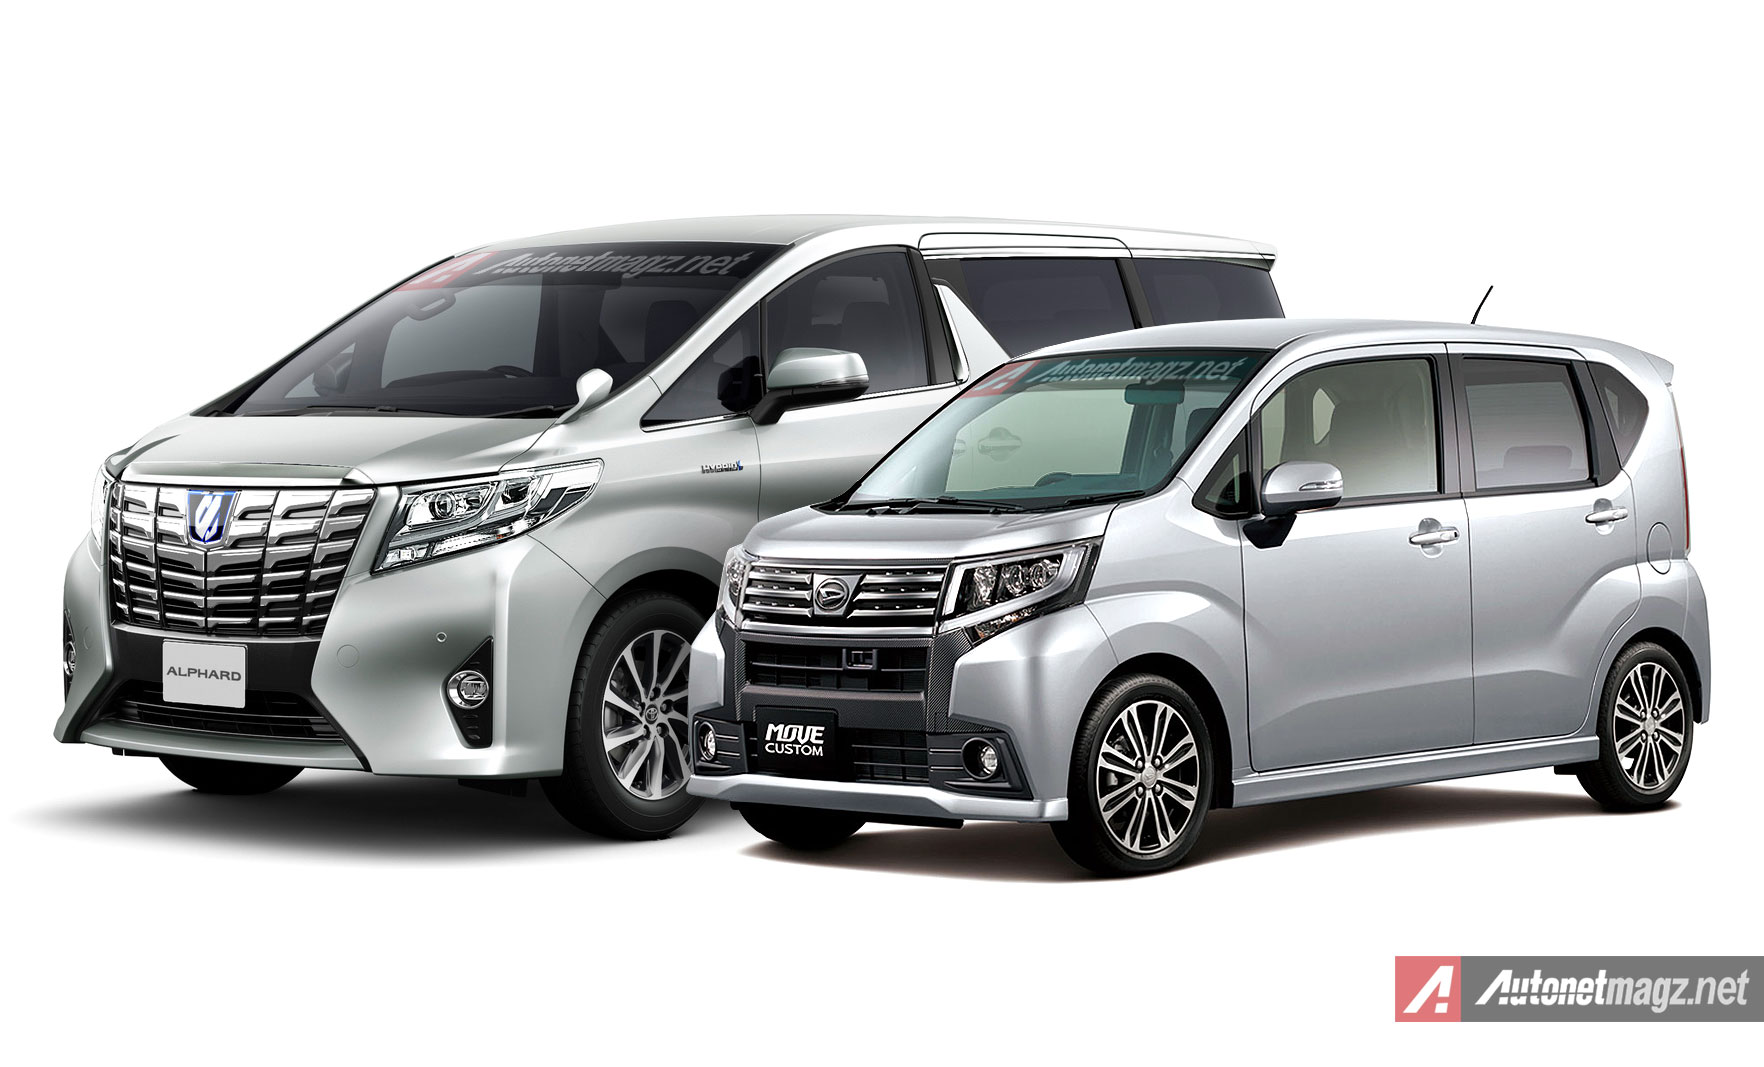 Daihatsu, Daihatsu Move mirip dengan wajah Toyota Alphard baru: Daihatsu Move Custom 2015 Wajahnya Mirip Alphard Mini